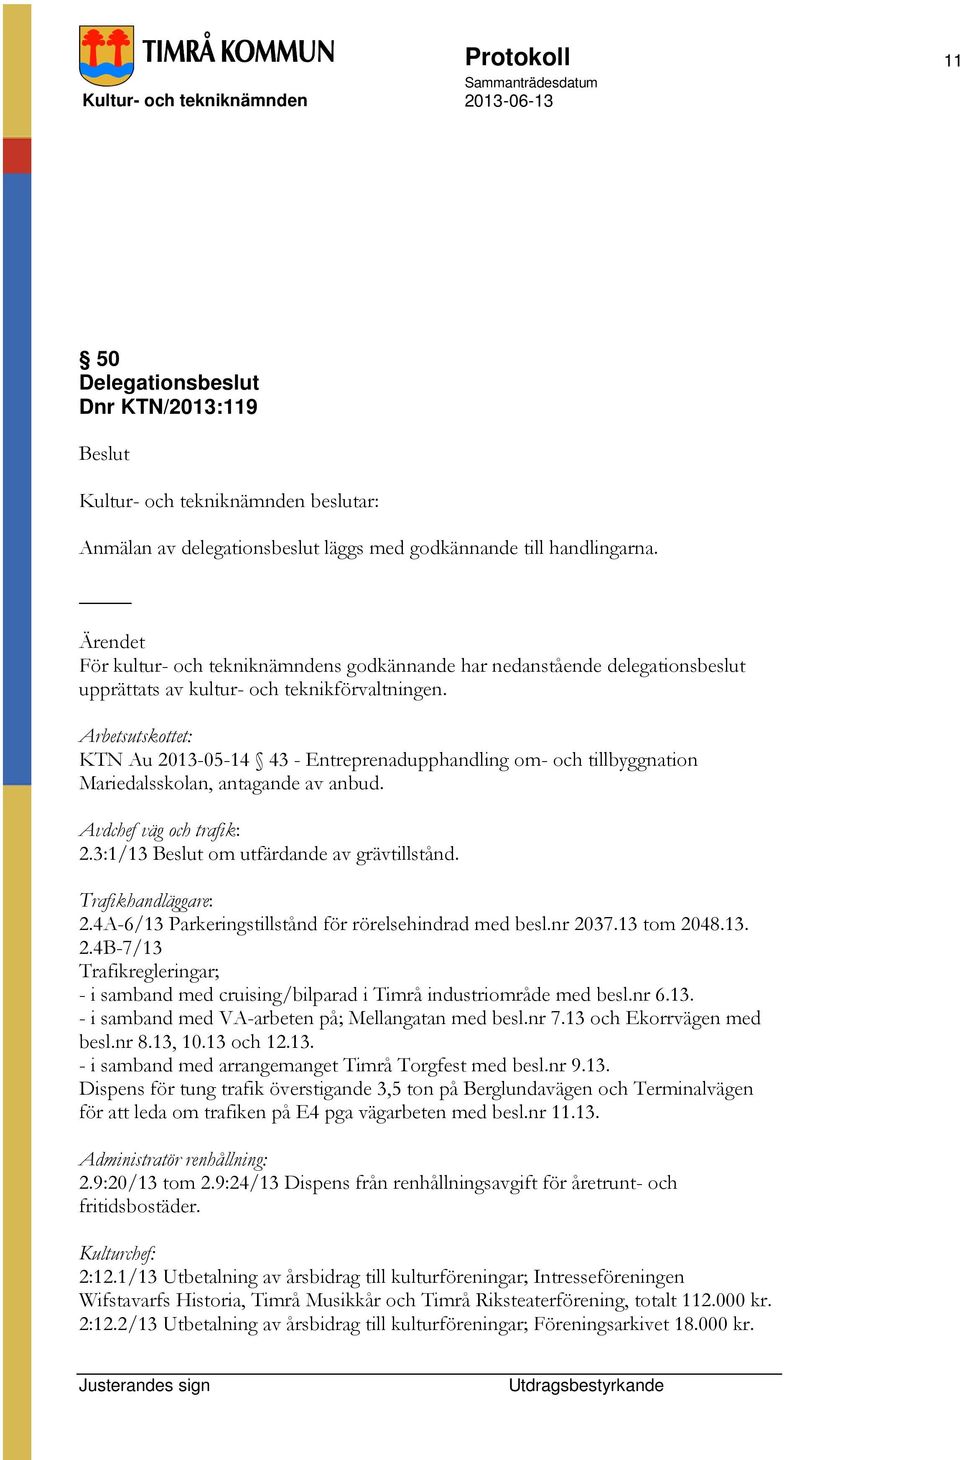 Arbetsutskottet: KTN Au 2013-05-14 43 - Entreprenadupphandling om- och tillbyggnation Mariedalsskolan, antagande av anbud. Avdchef väg och trafik: 2.3:1/13 om utfärdande av grävtillstånd.